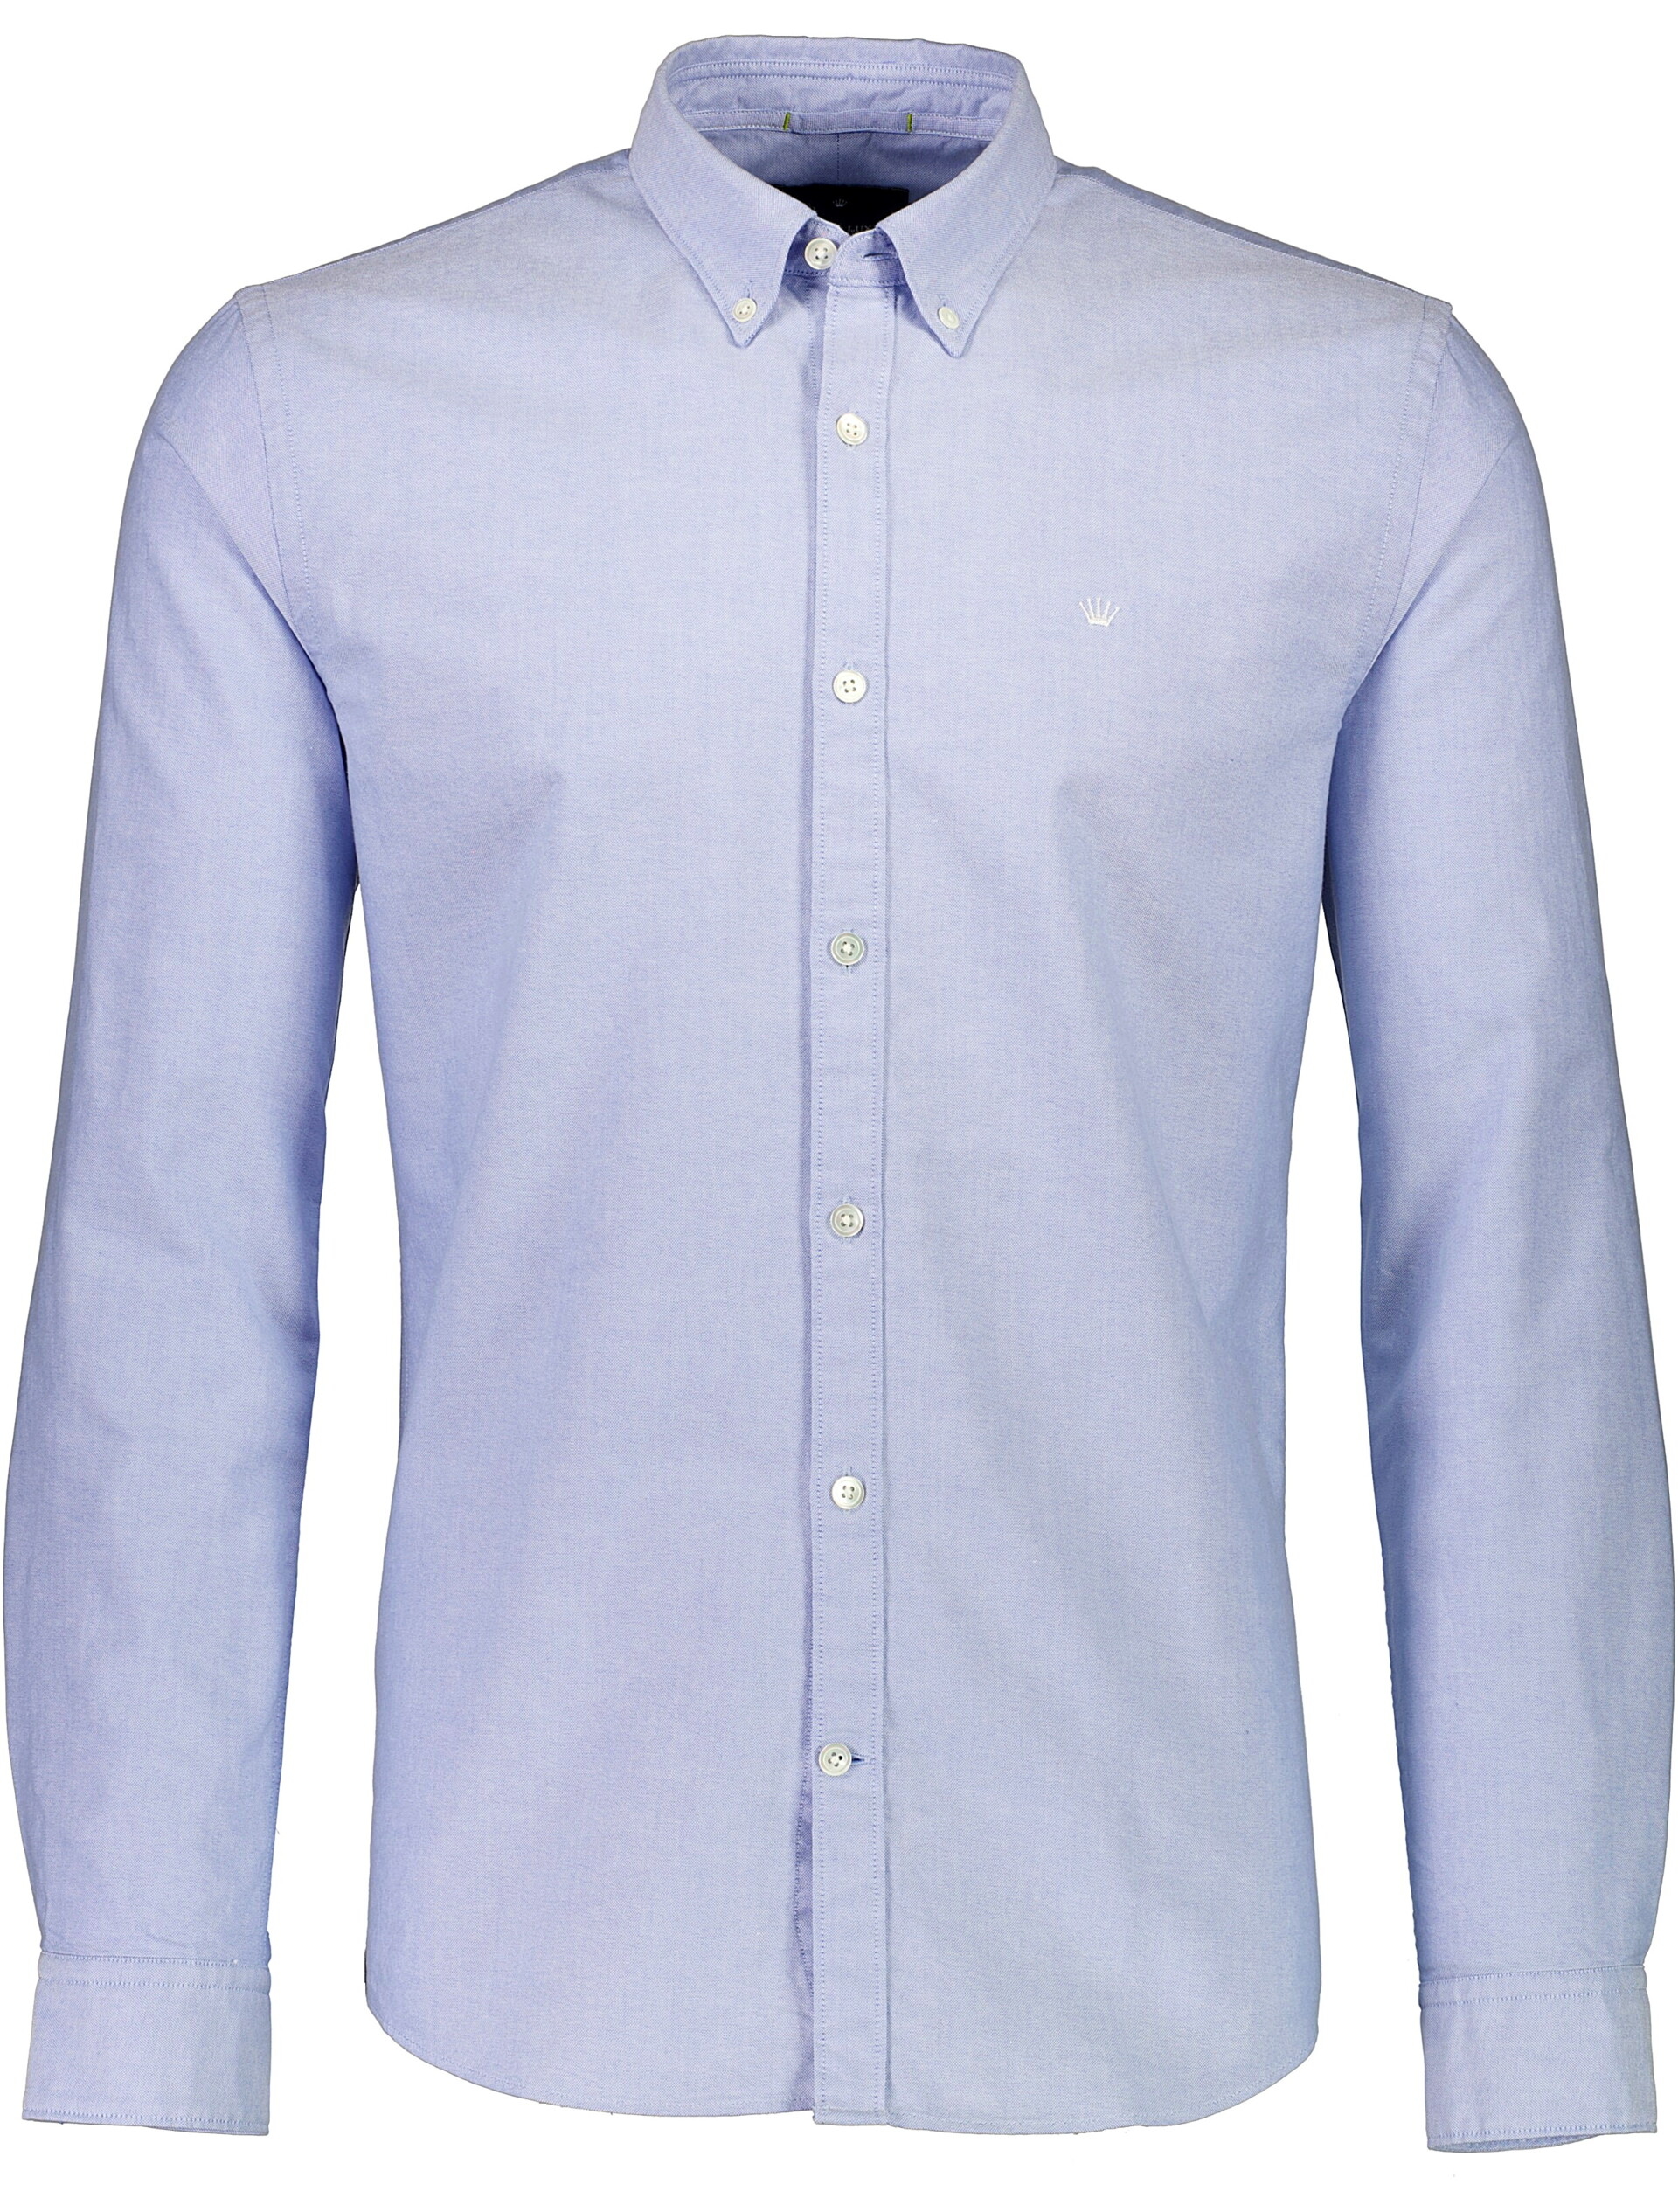 Junk de Luxe Oxford shirt blue / light blue